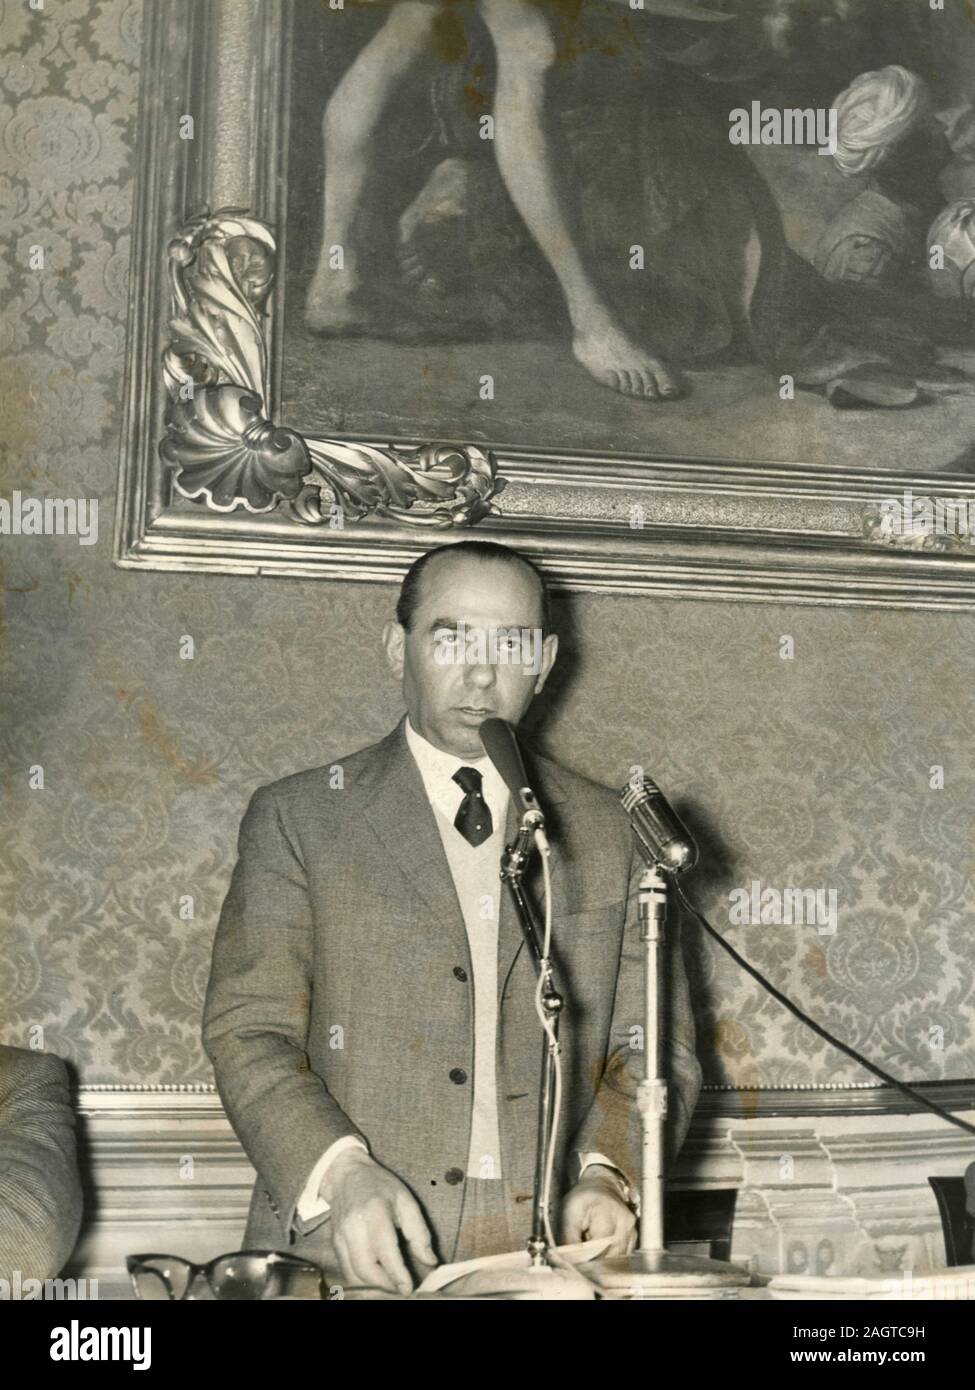 Homme politique italien Paolo Bonomi lors d'une conférence de presse après le congrès national de la Coldiretti, Rome, Italie 1962 Banque D'Images